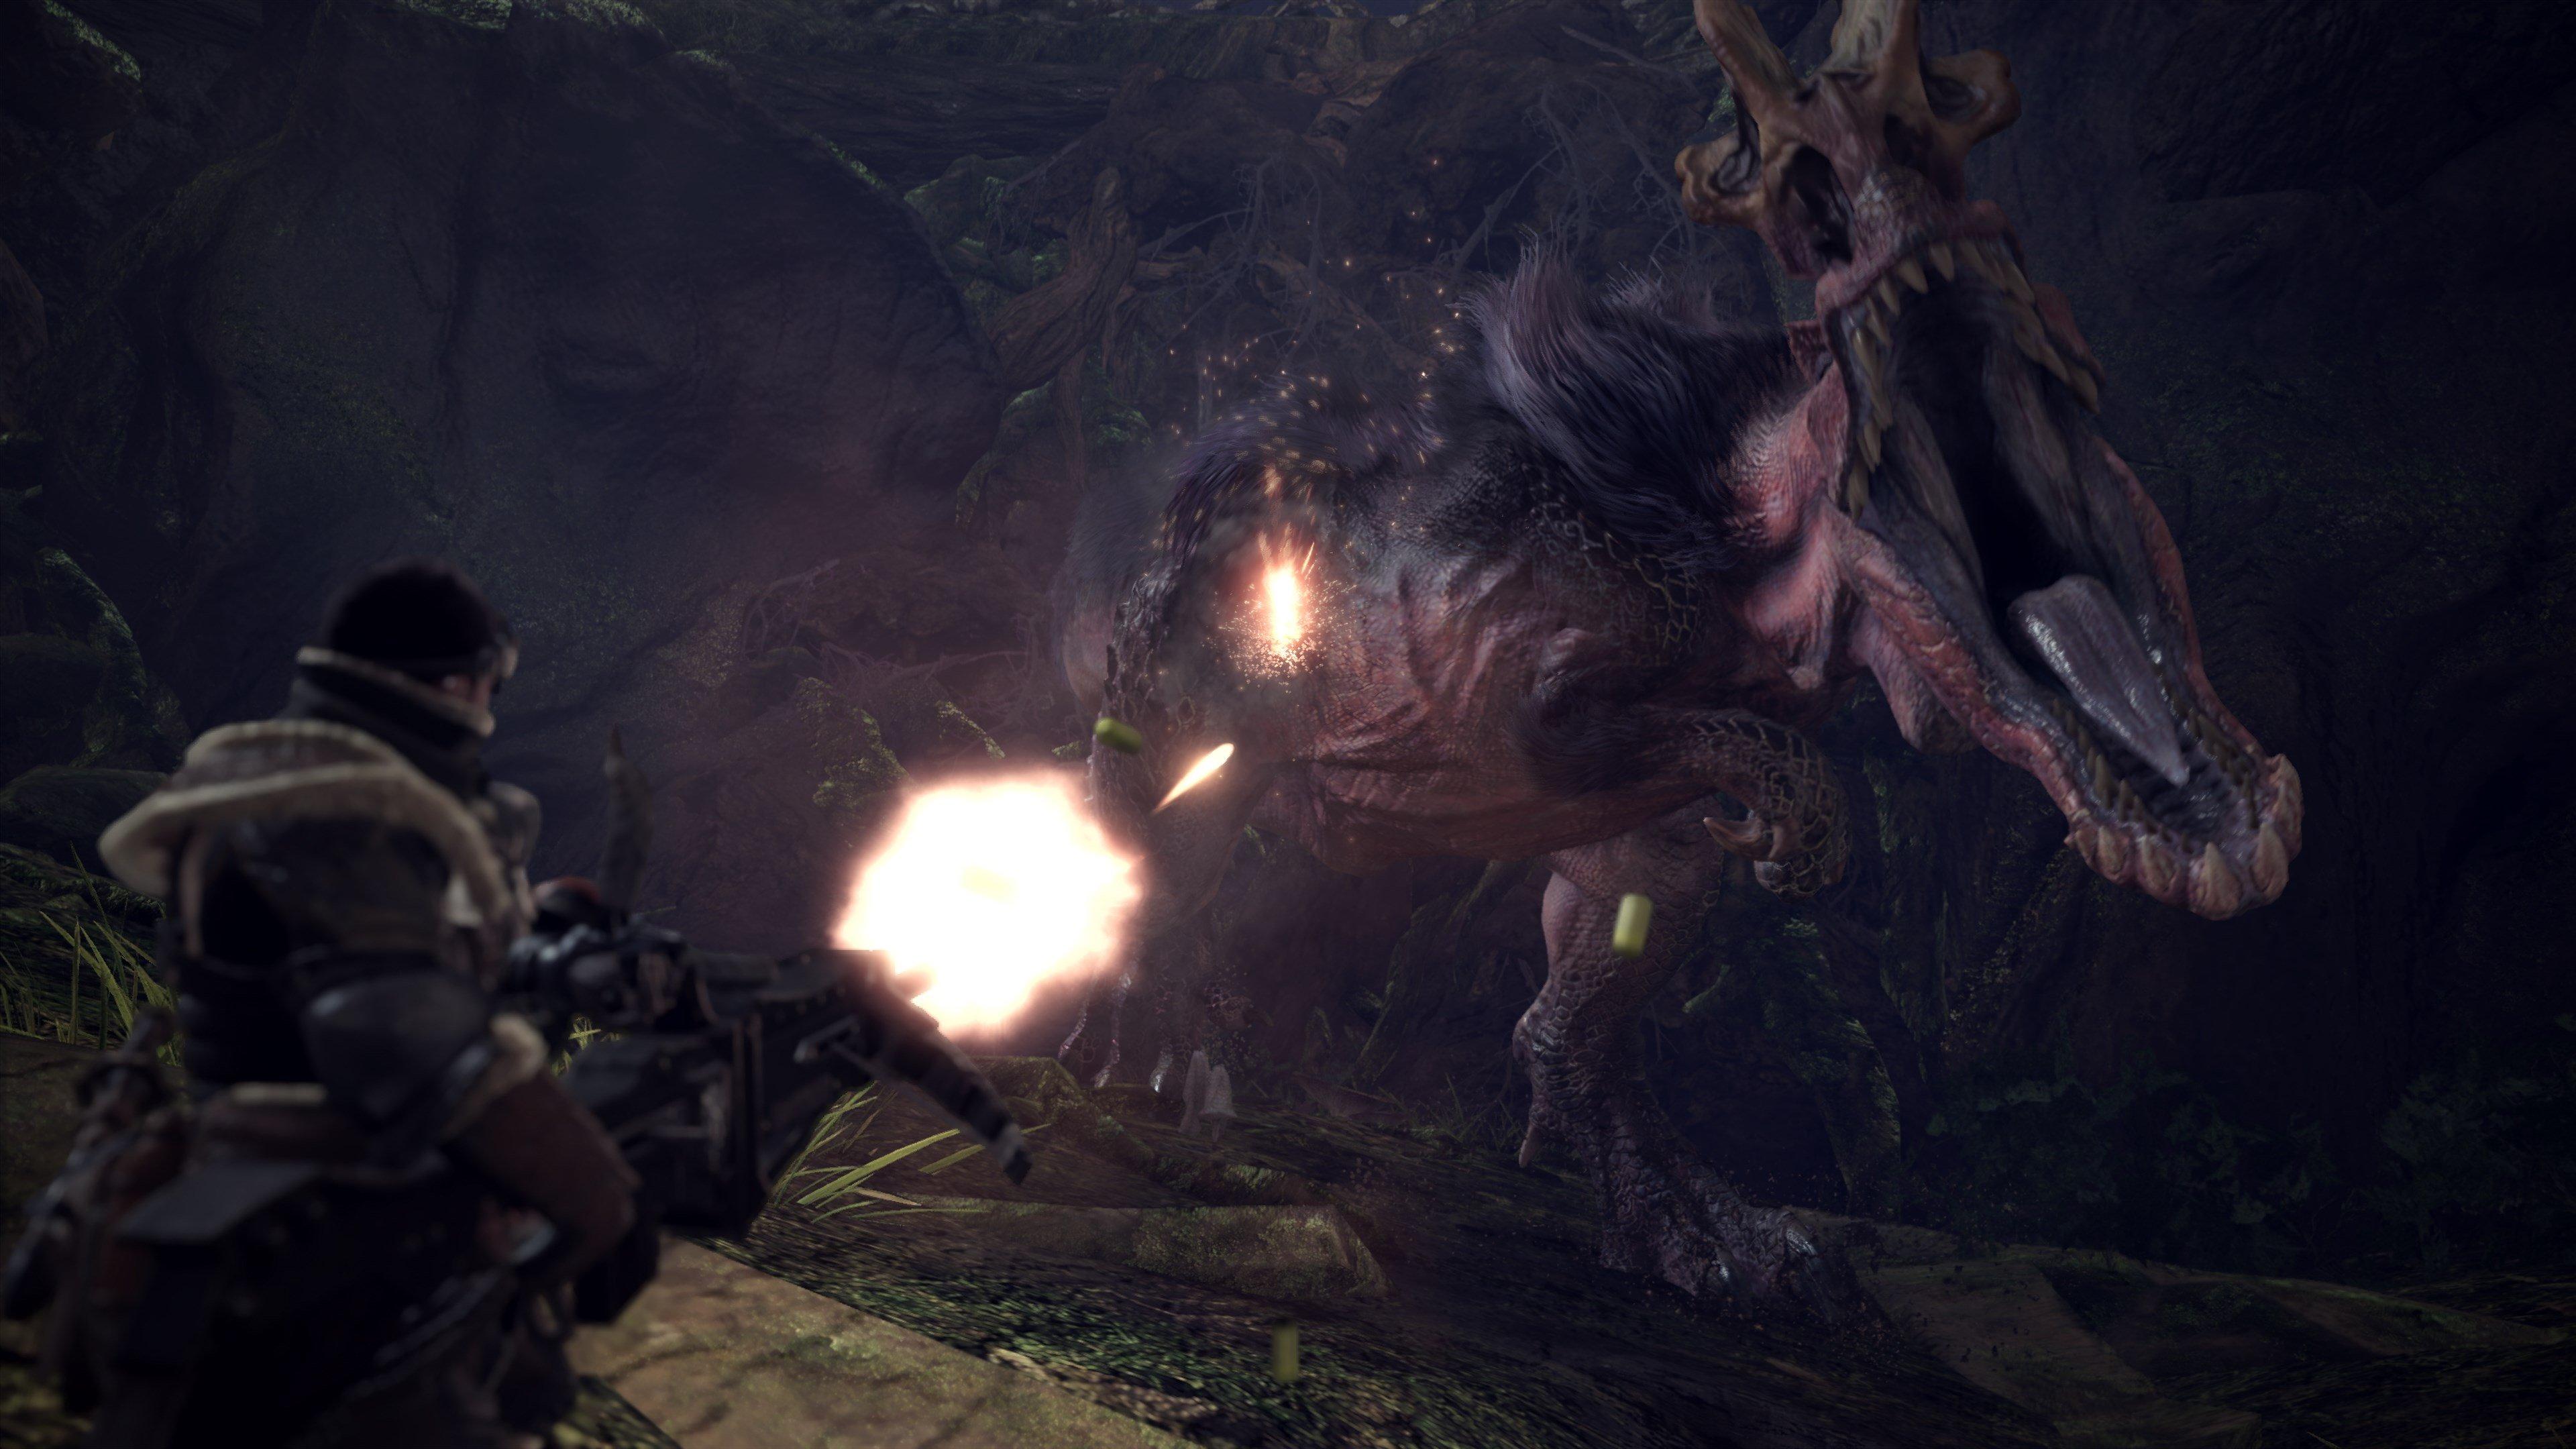 Monster Hunter: World - Xbox One